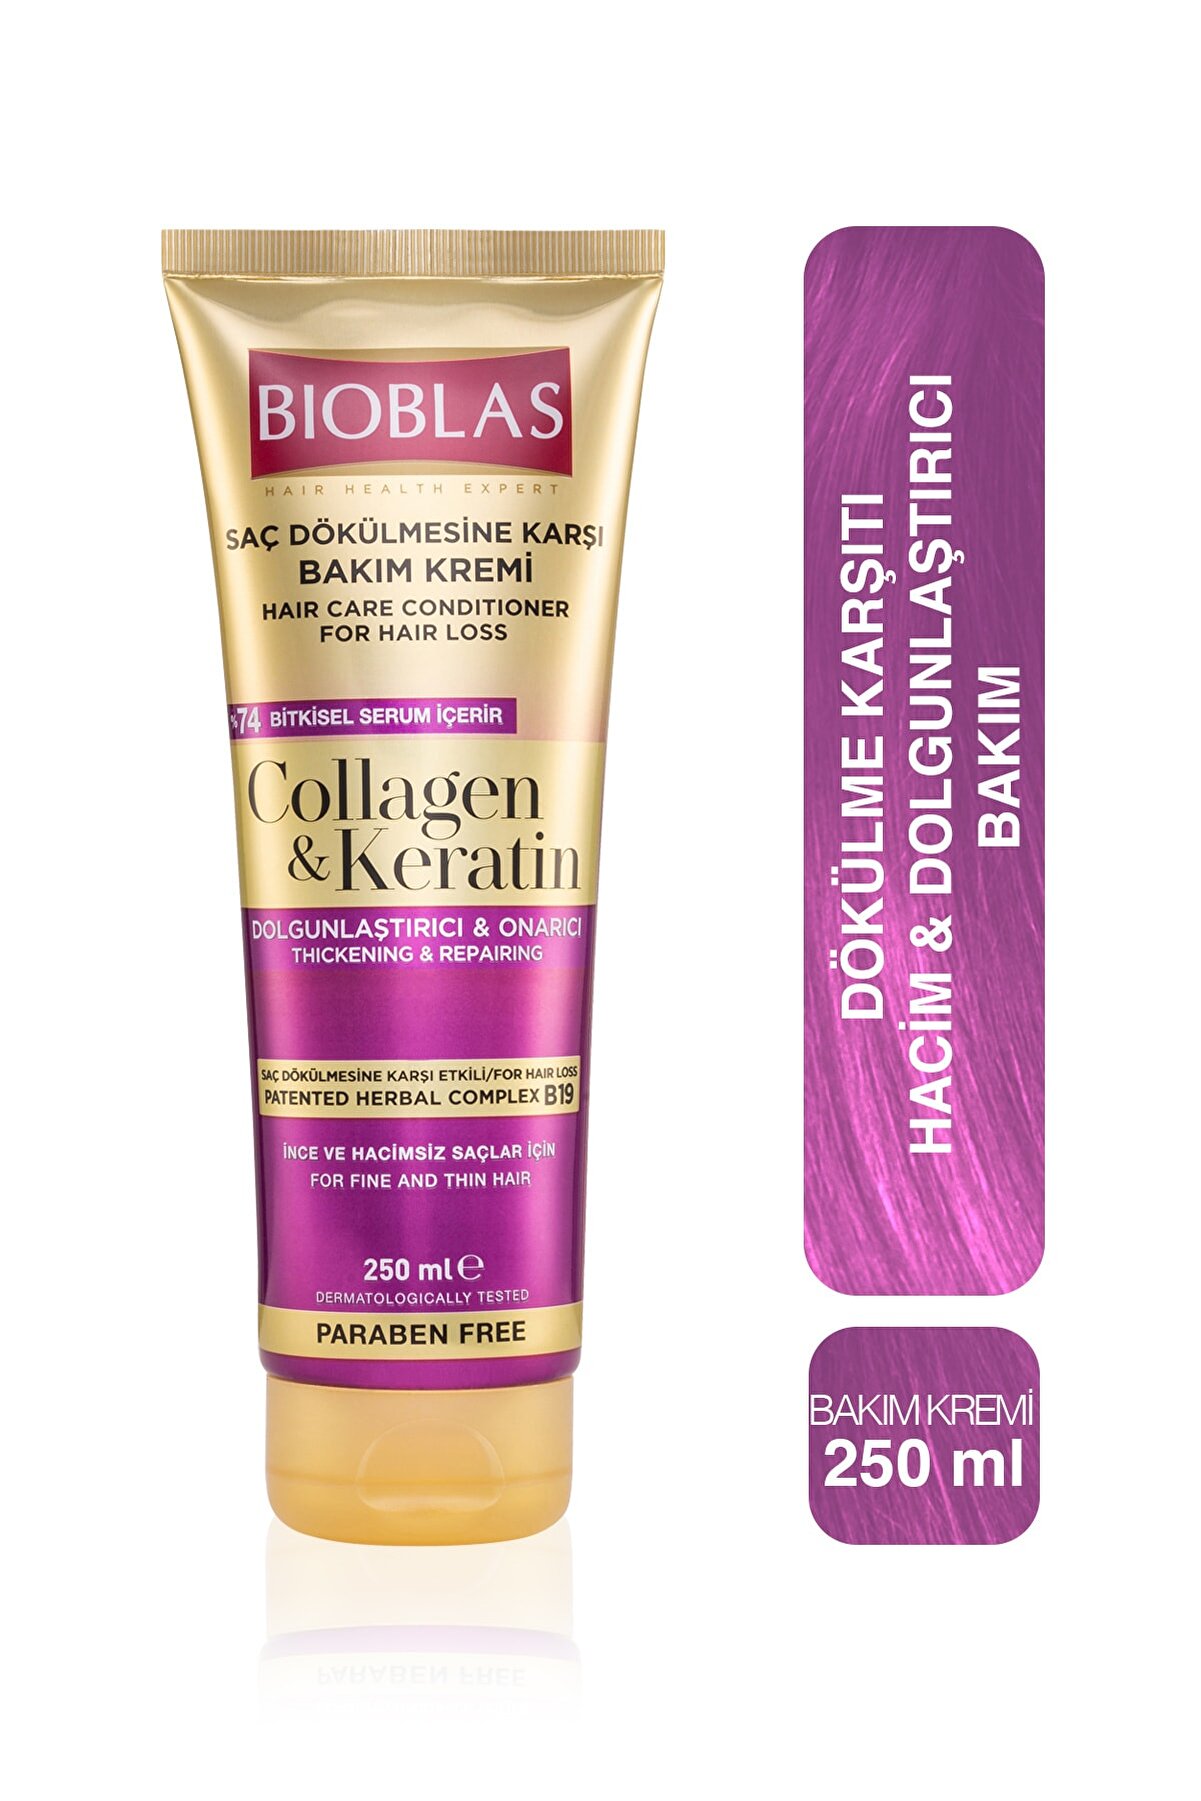 Bioblas Saç Dökülmesine Karşı Bakım Kremi 250ml Collagen&keratin